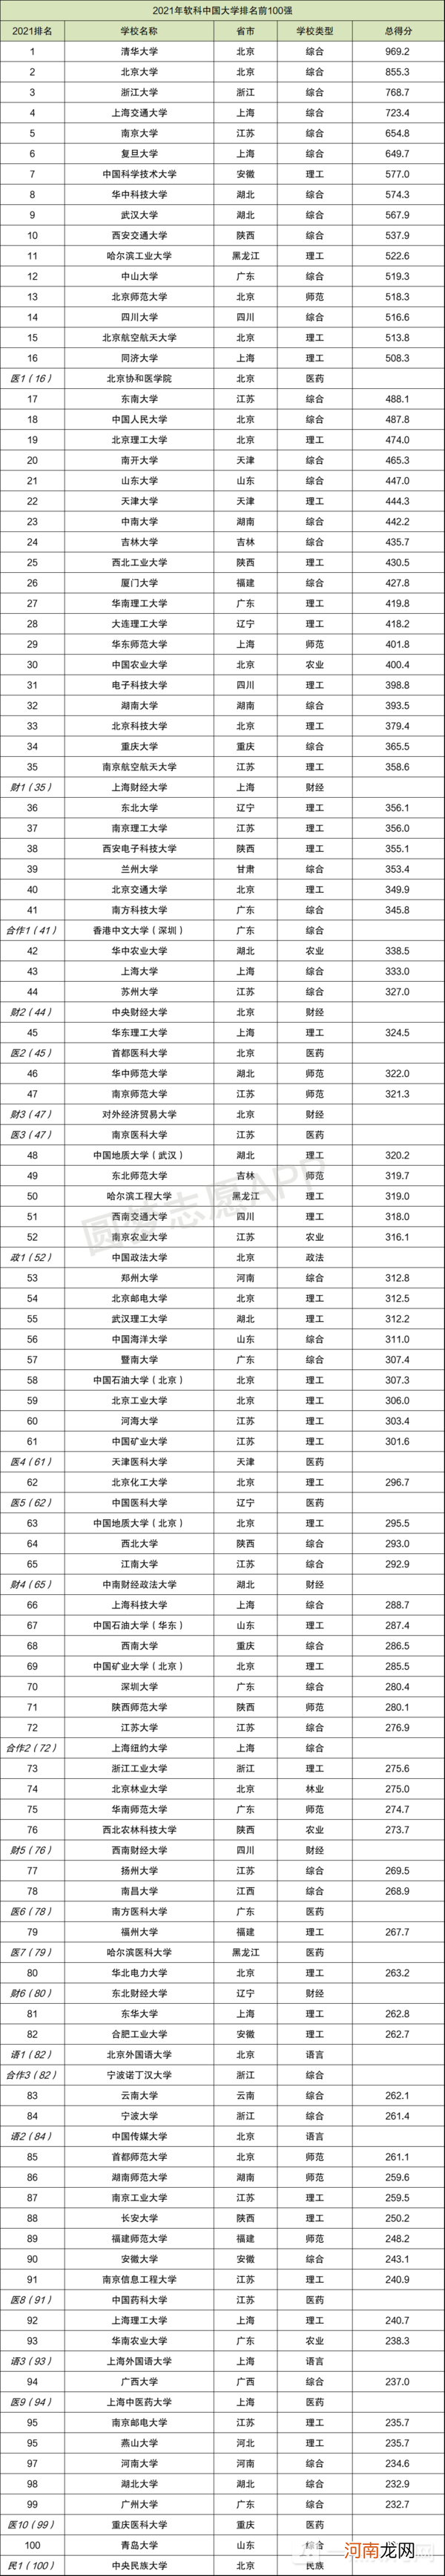 软科2022中国大学排行榜发布-软科2022中国大学排名完整版优质